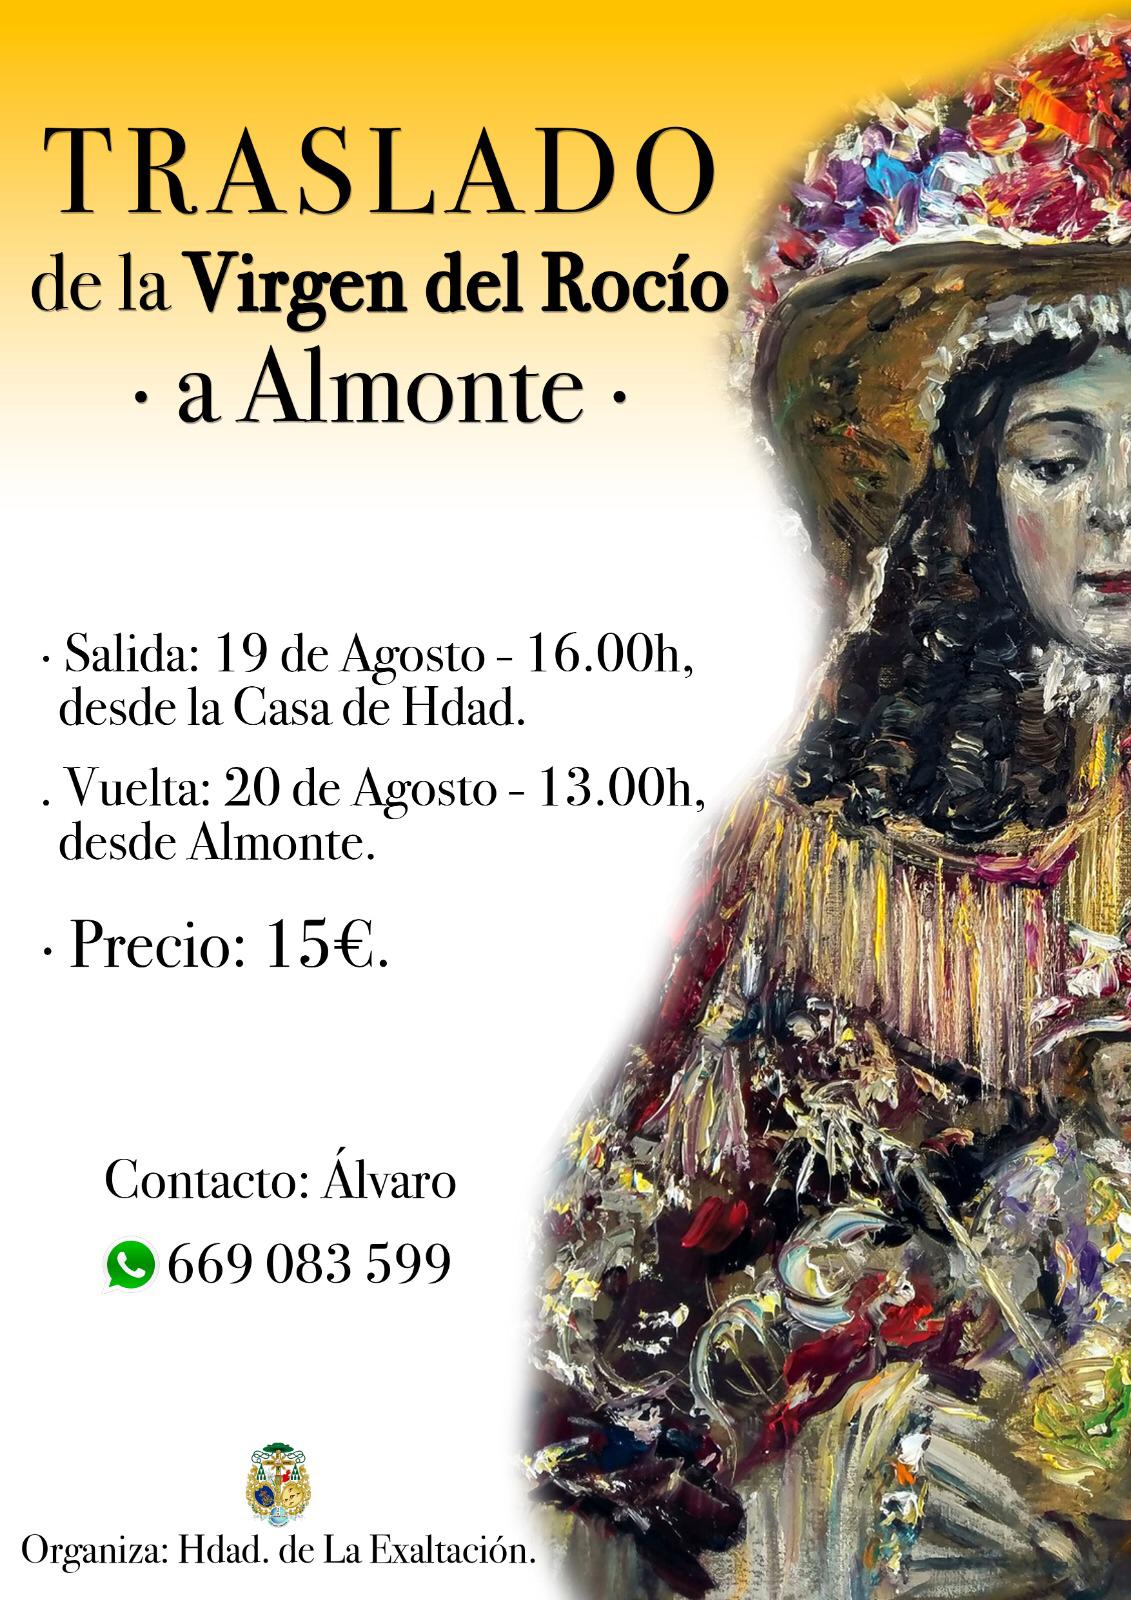 Traslado A Almonte De La Virgen Del Rocío Hermandad De La Exaltación Jerez